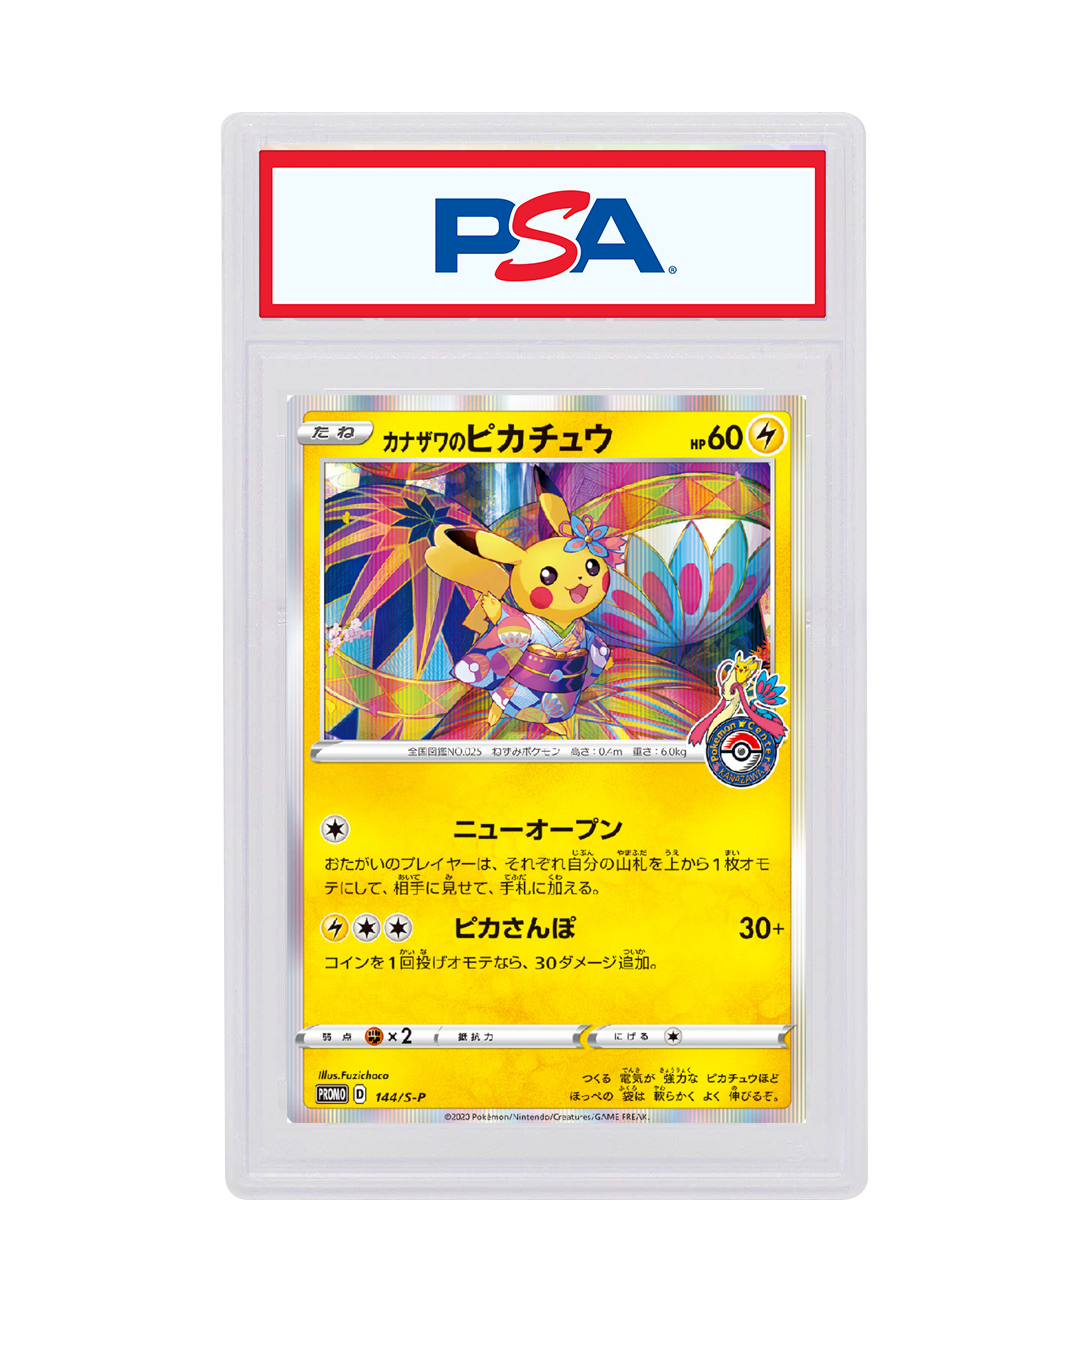 Pokemon Card Kanazawa Pikachu 144/S-P Promo Pokemon Center Kanazawa Limited